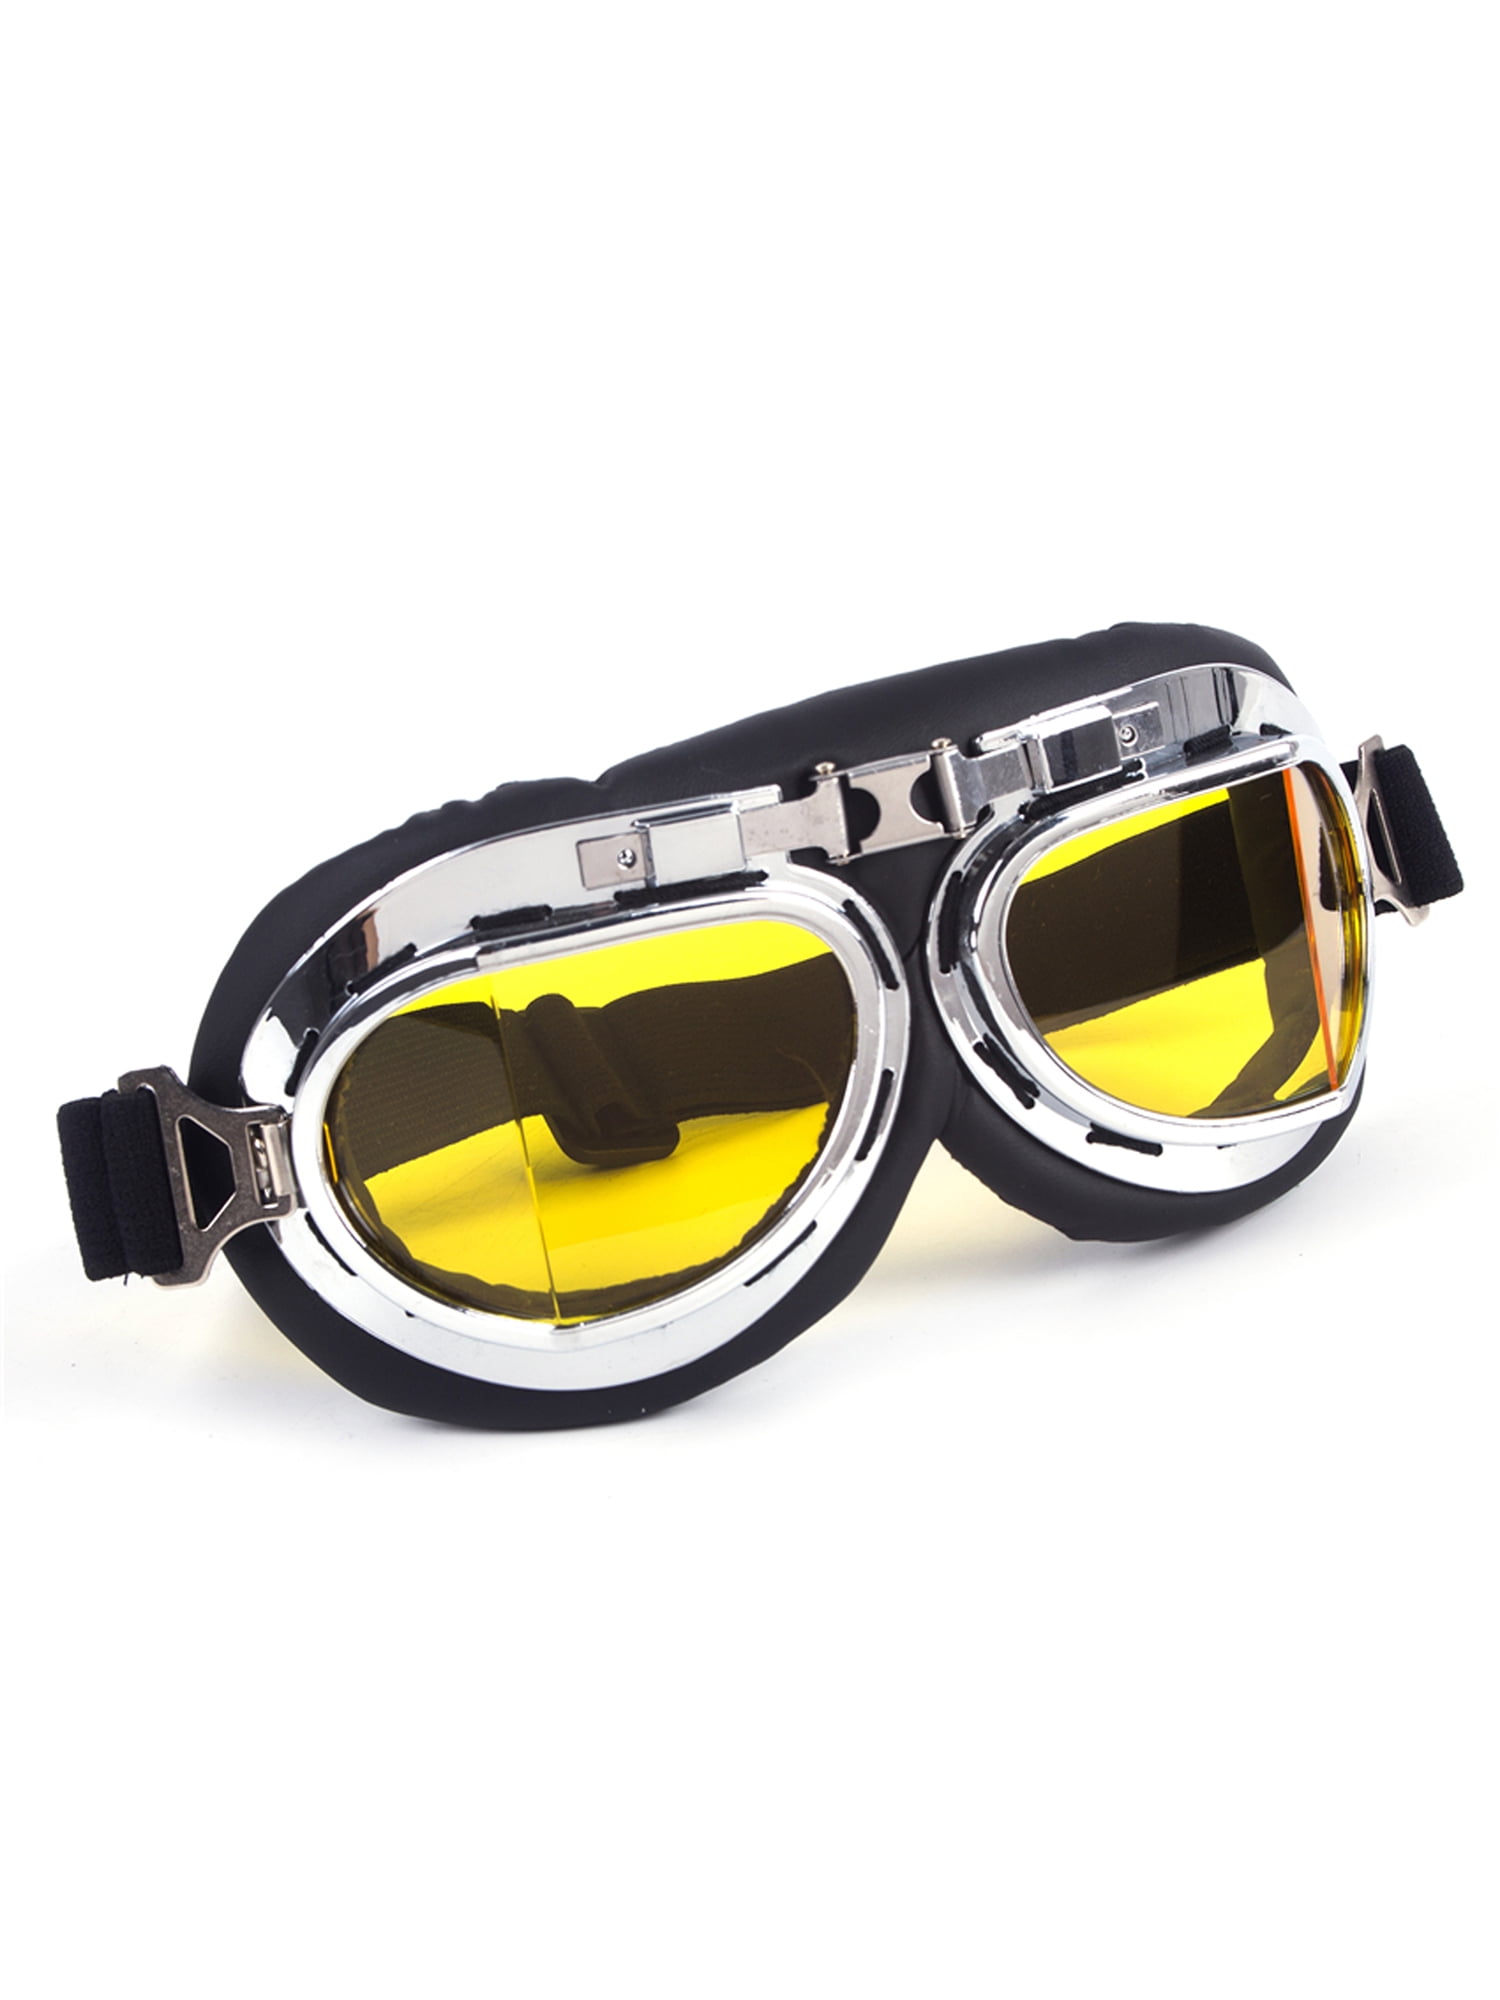 Goggles Welding Steampunk Sunglasses New Fashion Arrival Vintage Style Sunglasses Retro 90s Sunglasses